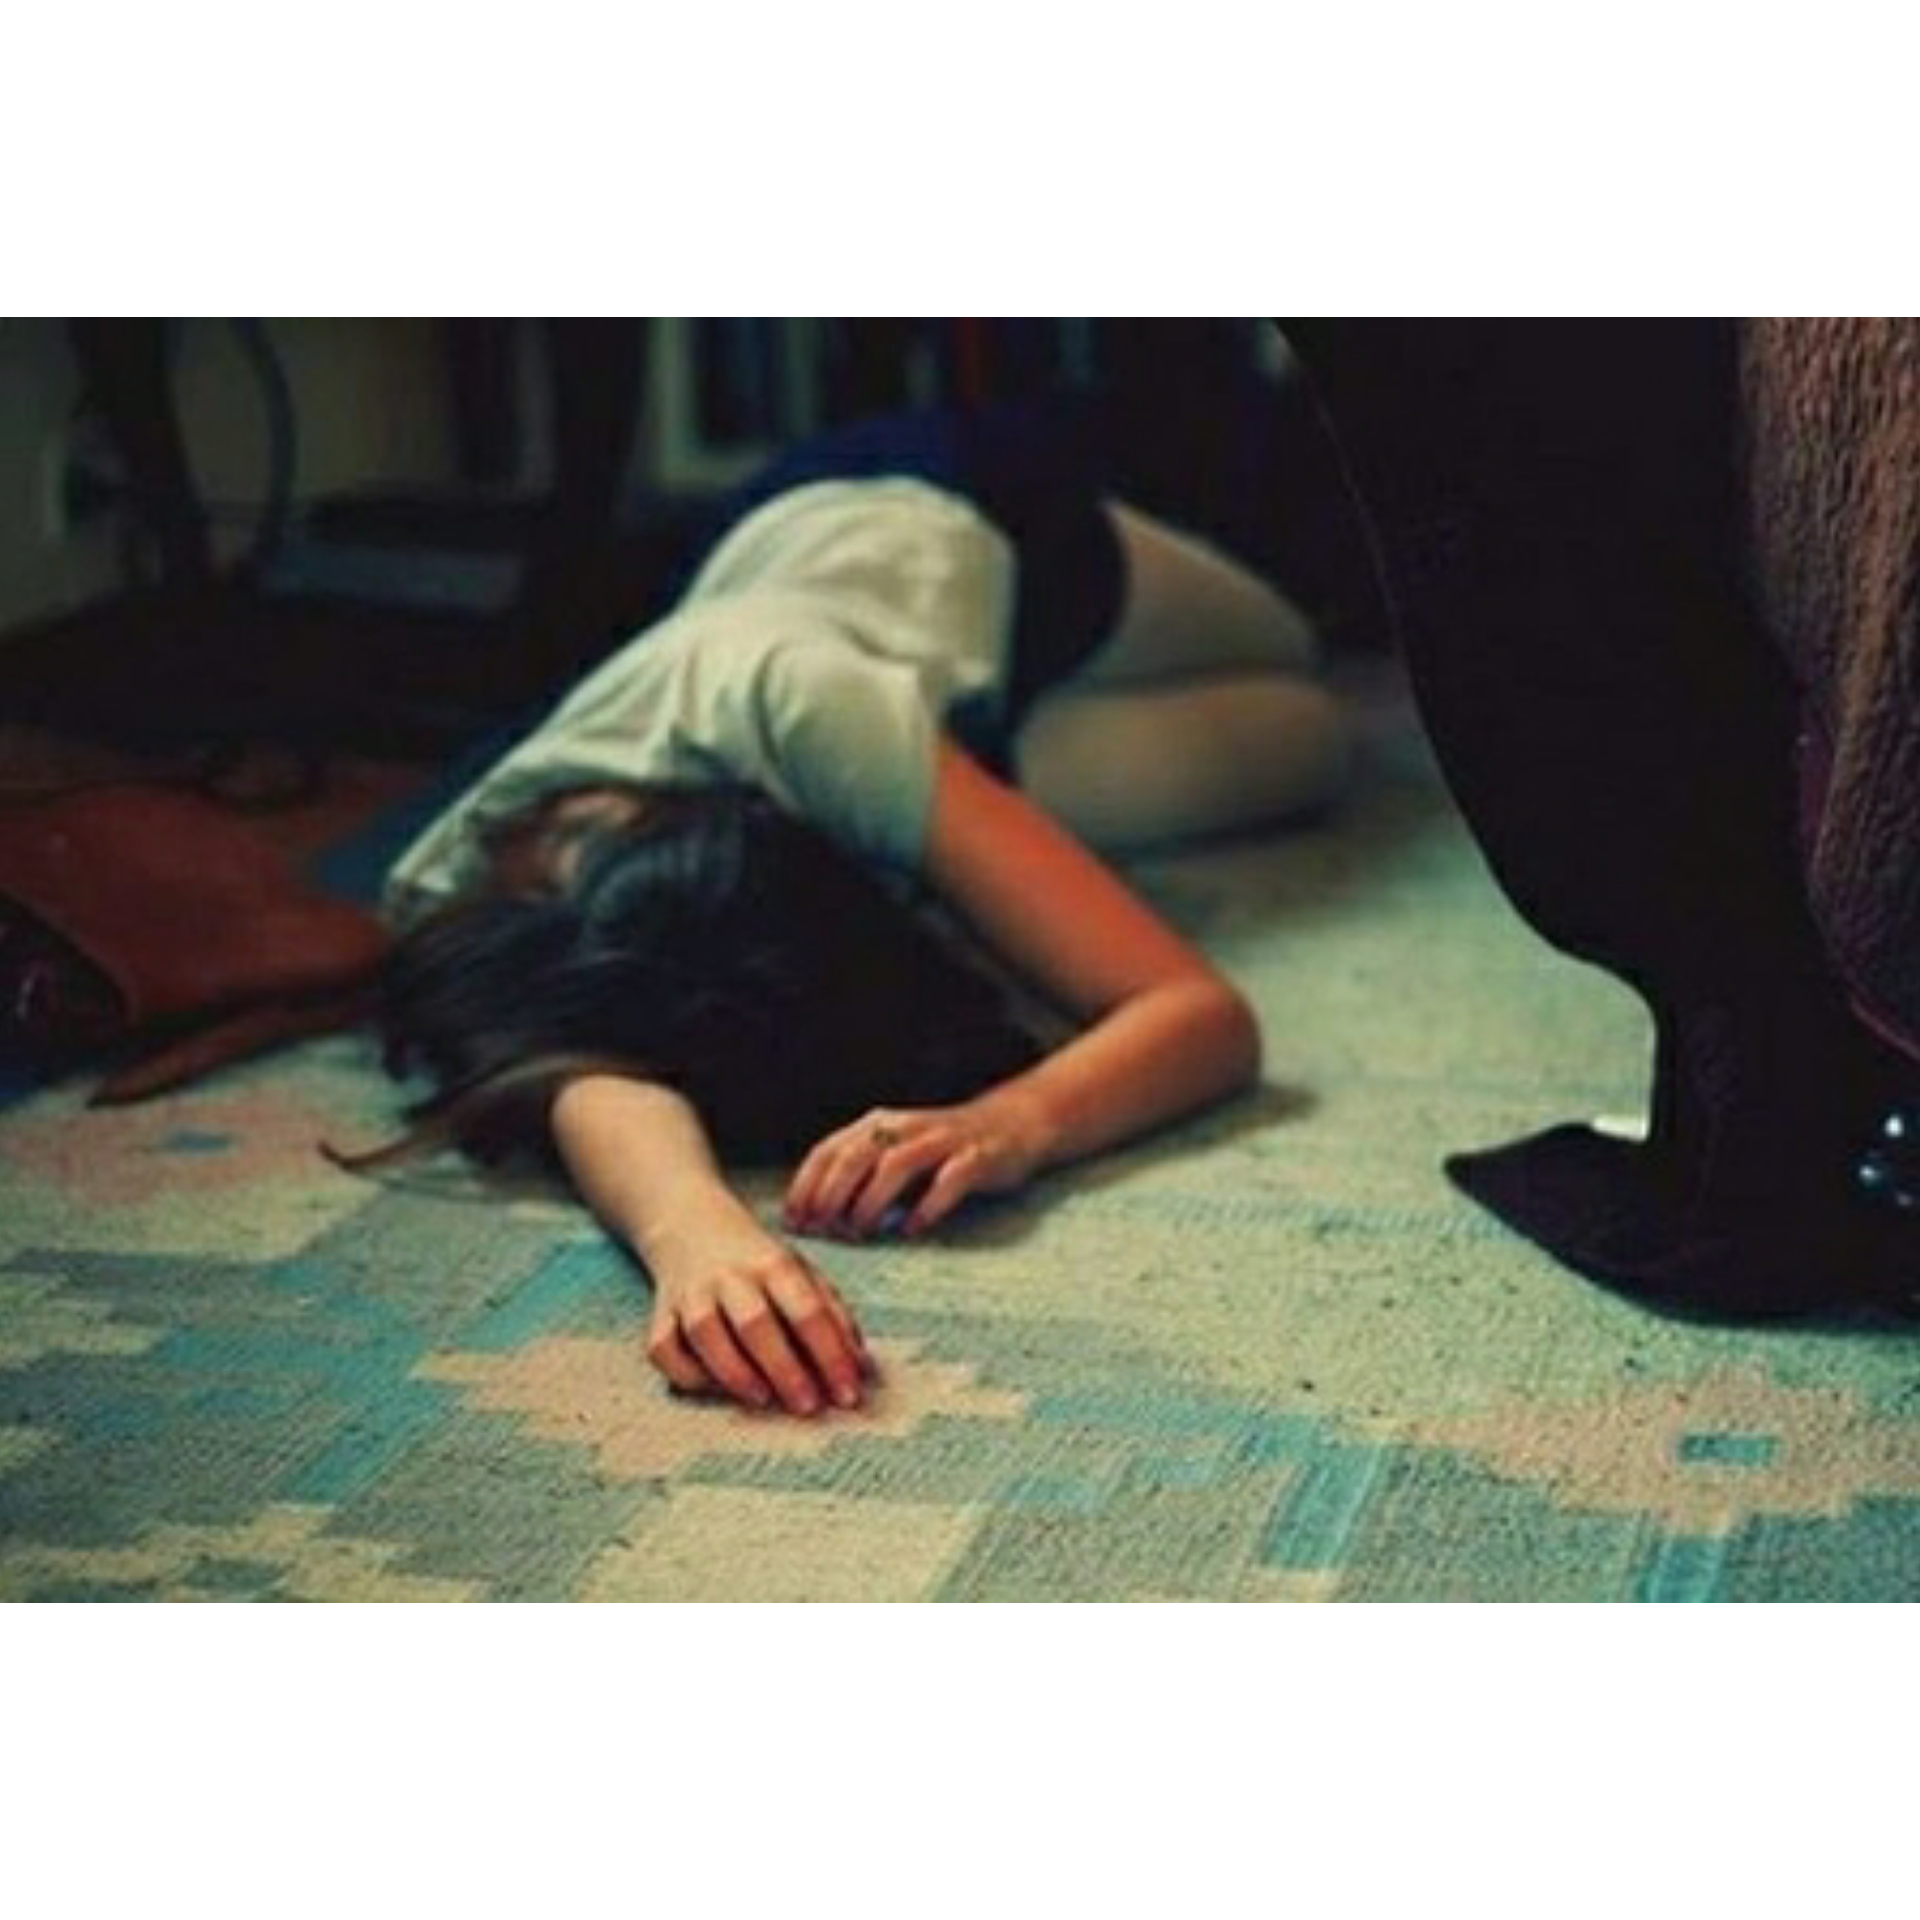 Женщина упала без сознания. Женщина валяется на полу. Женщина без сознания на полу.